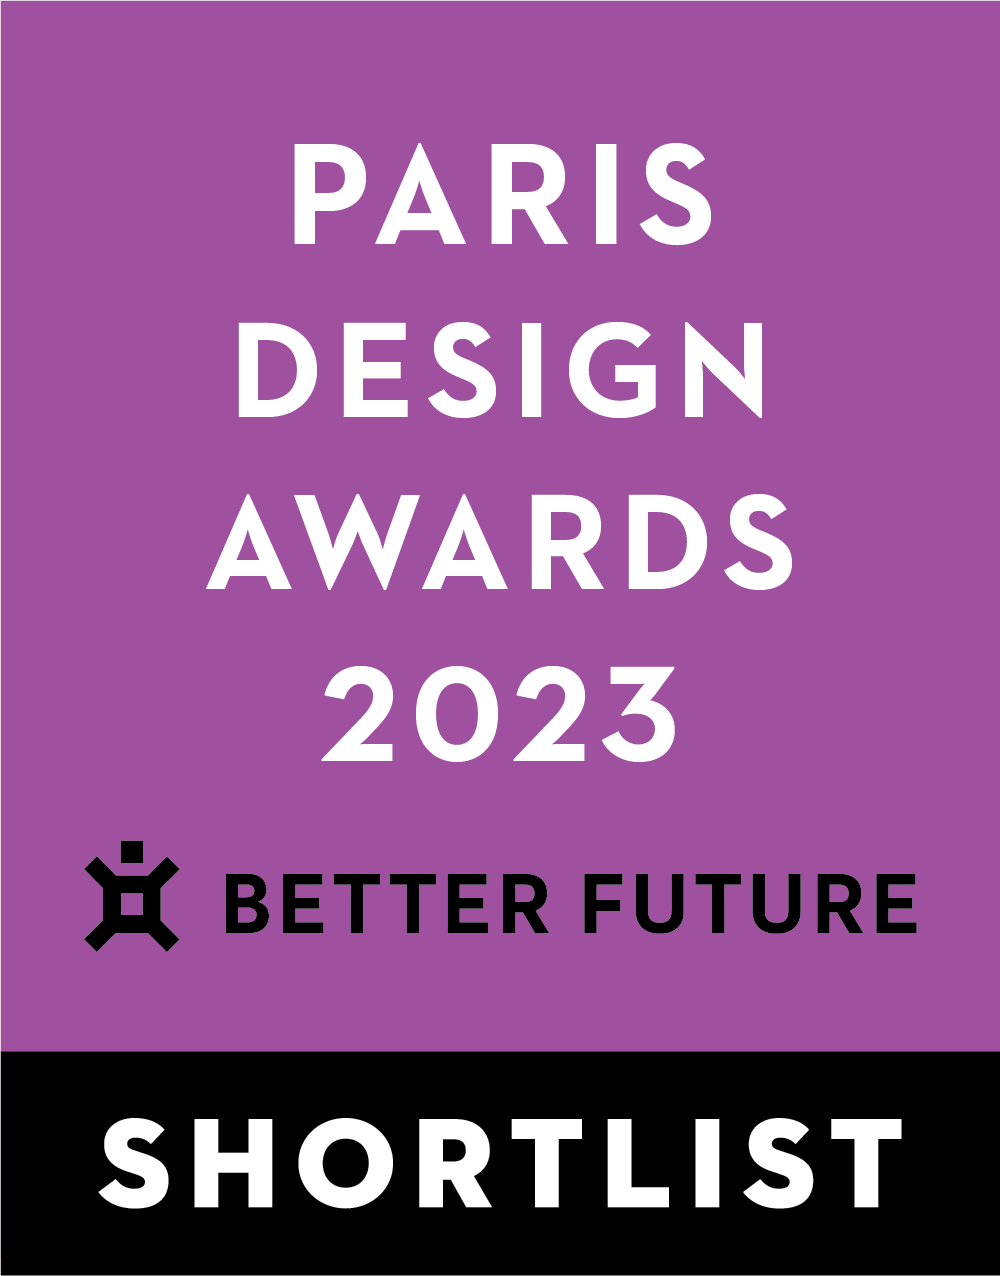 2023 巴黎設計獎 PARIS DESIGN AWARDS